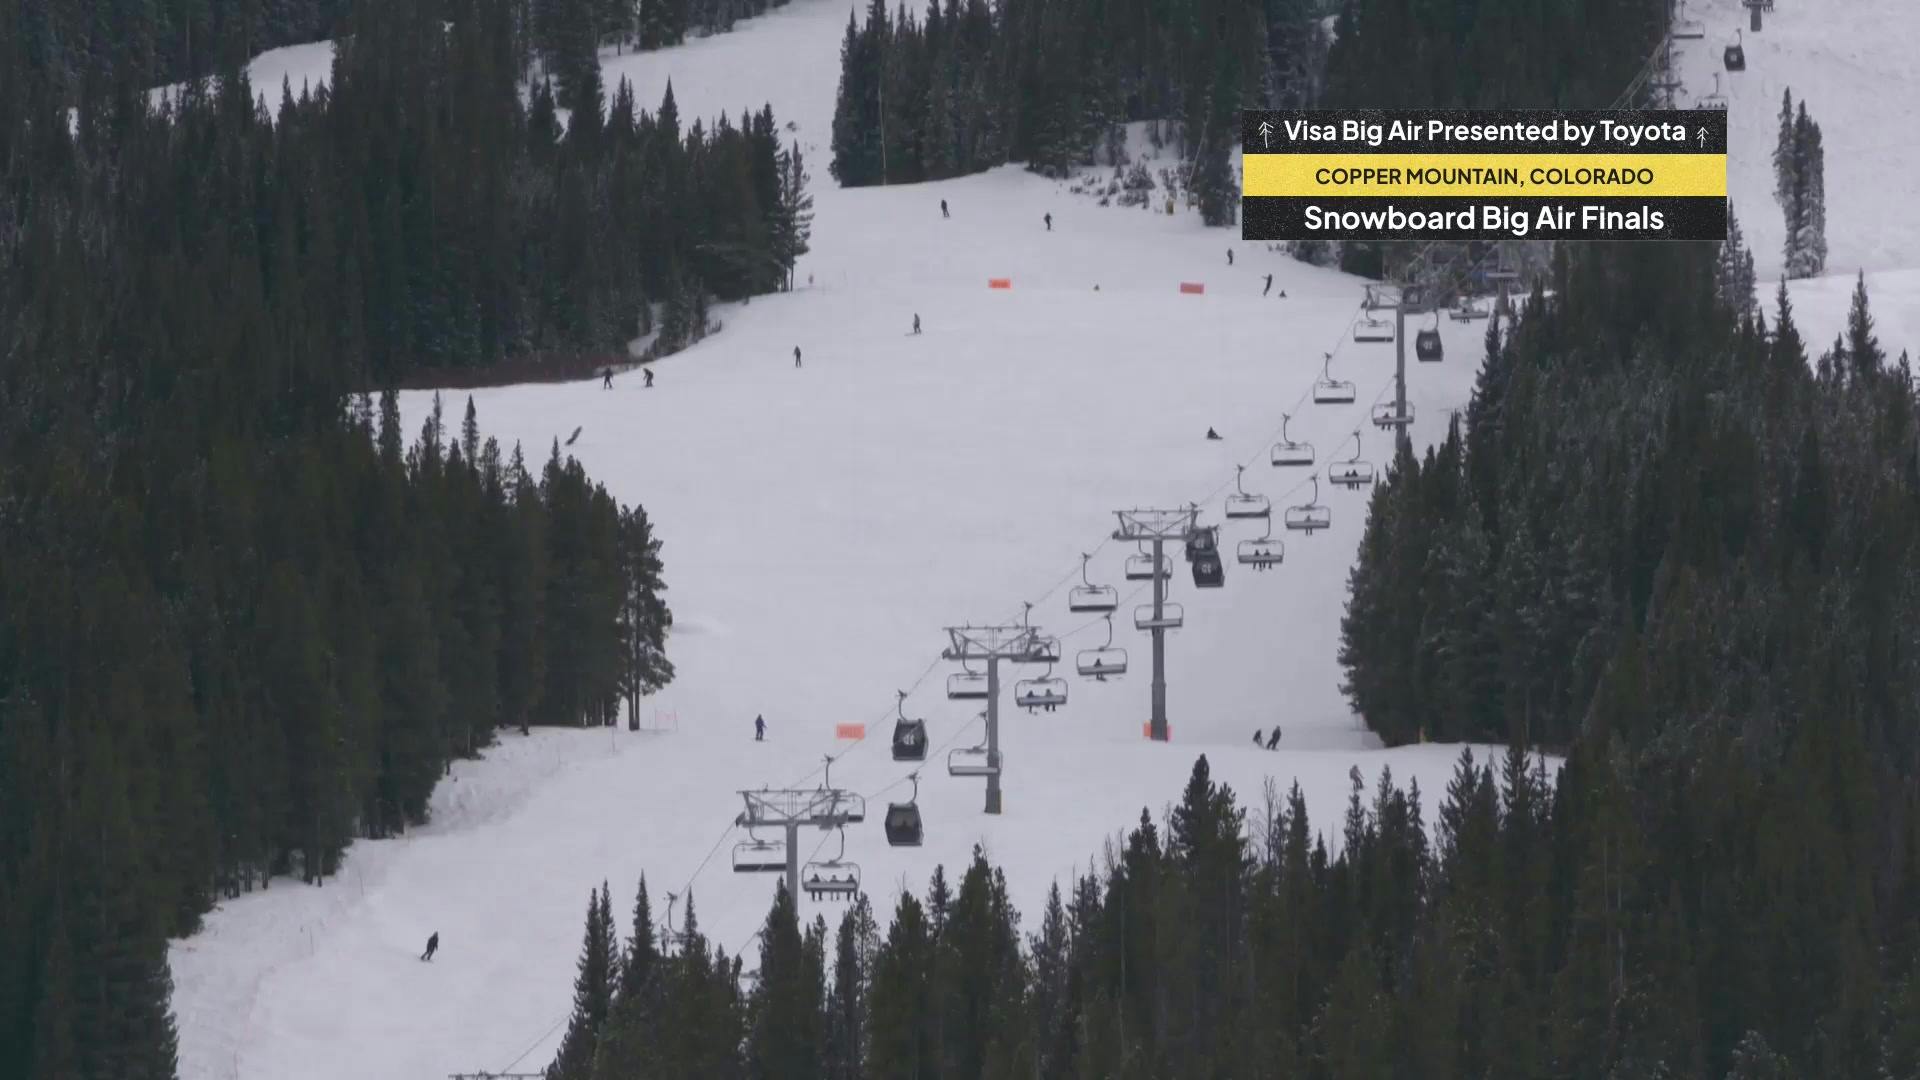 FIS Visa Big Air Snowboard Finals